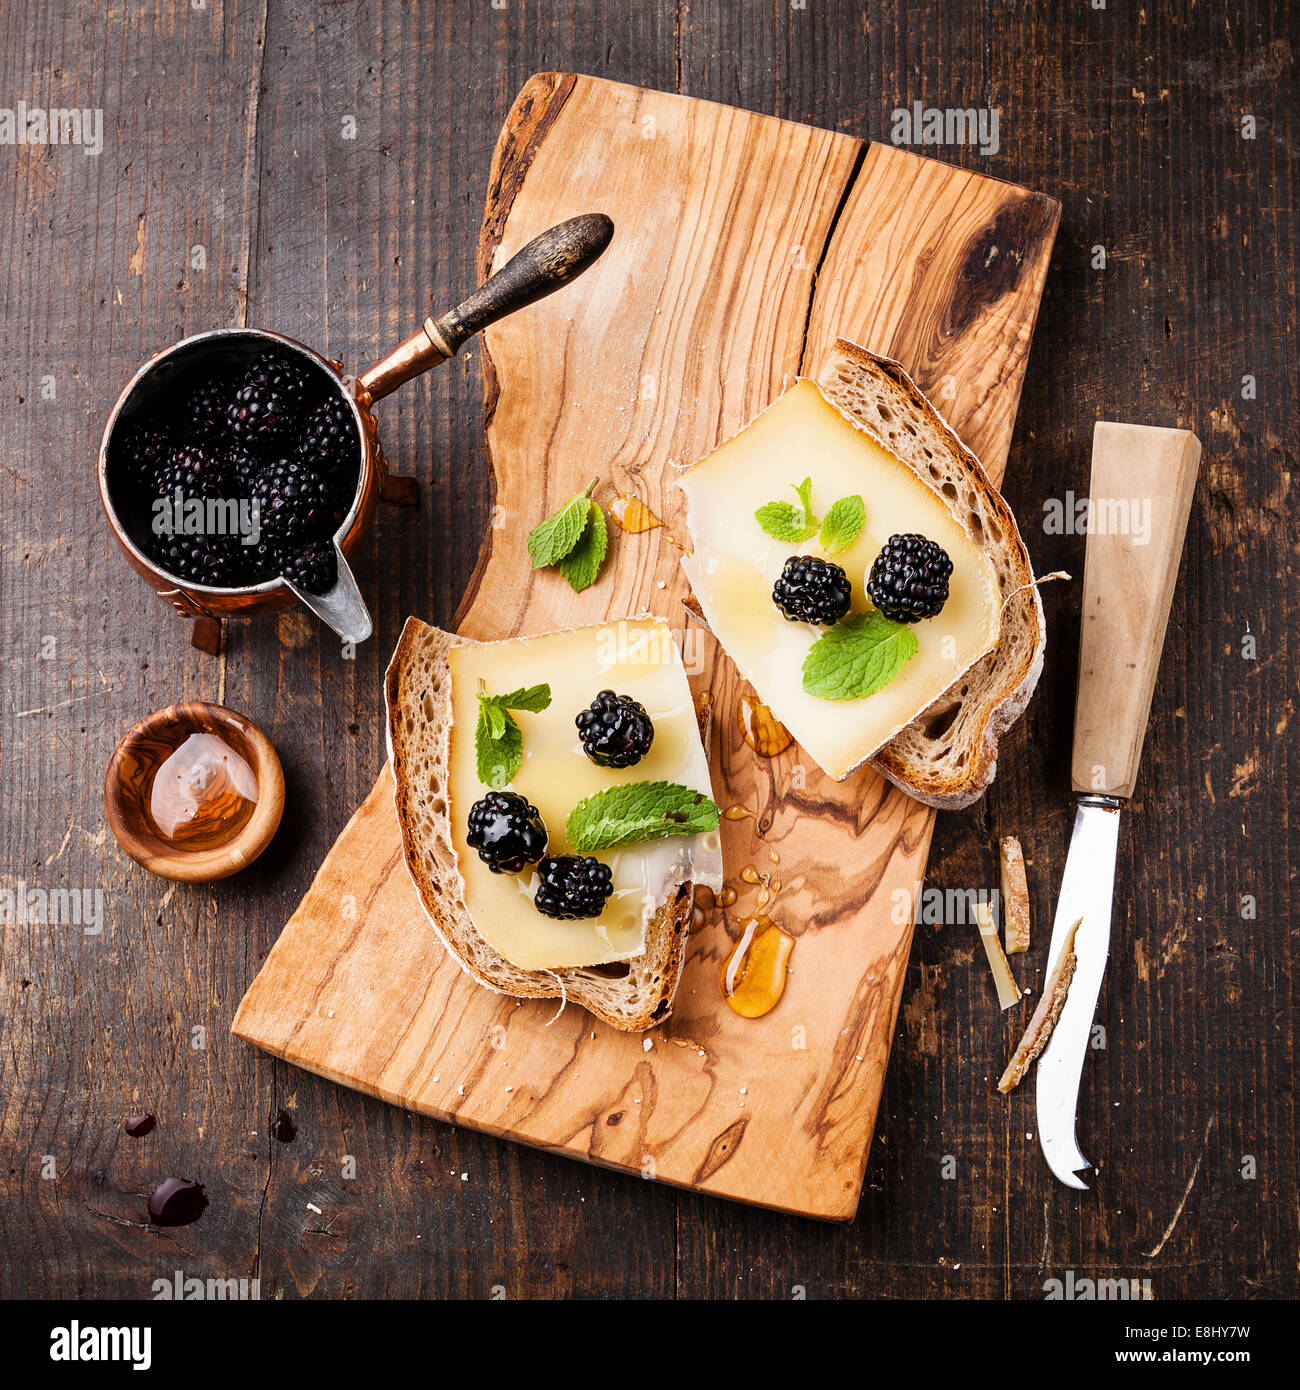 Bruschetta italiana sandwich con formaggio e blackberry su pane fresco su scuro dello sfondo in legno Foto Stock